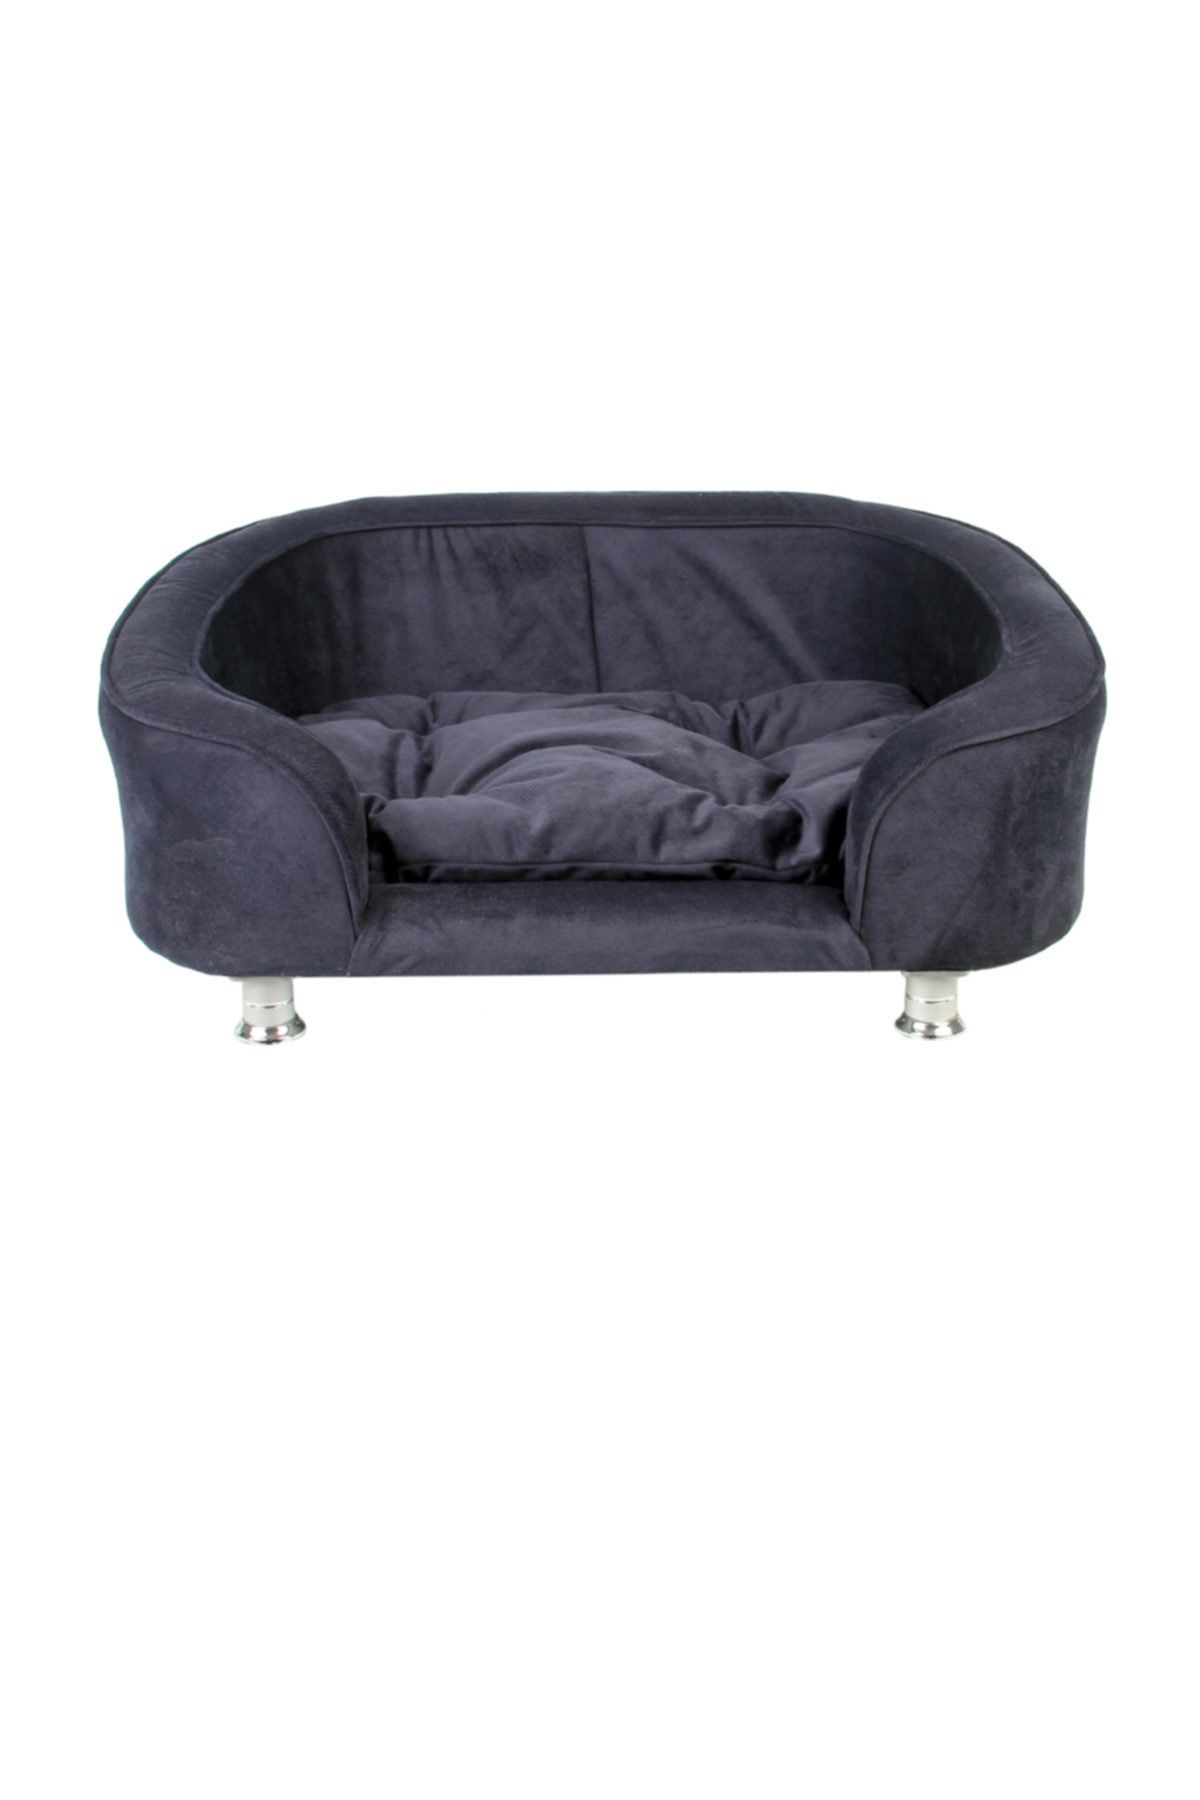 RENKLİ EV TASARIM Istanbul Model Kedi - Köpek Yatakları (koltuğu) 105*65 cm